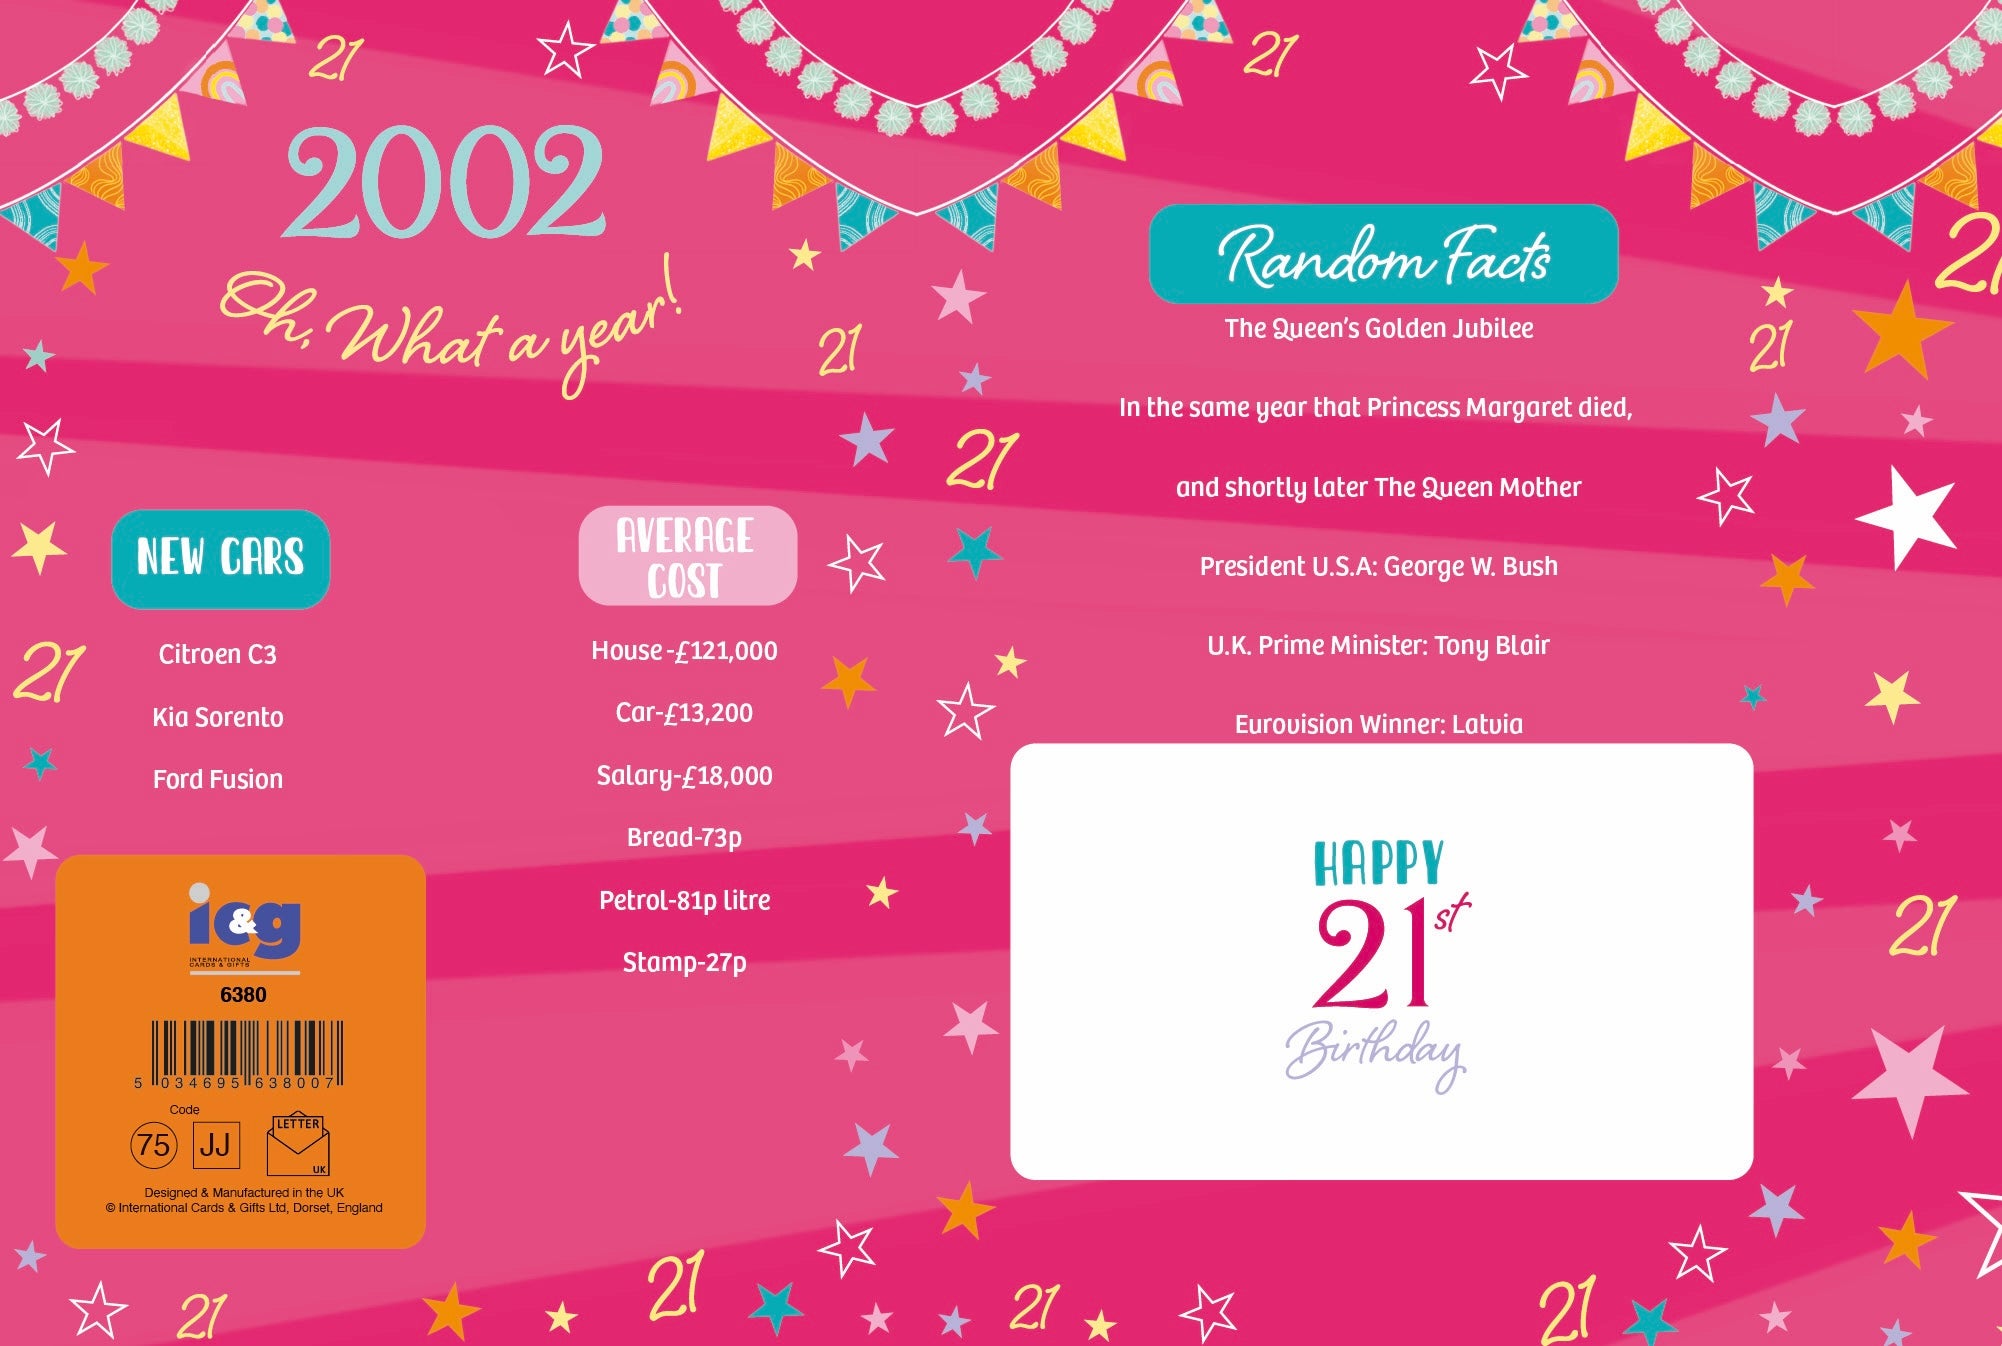 21st birthday card - born in 2002